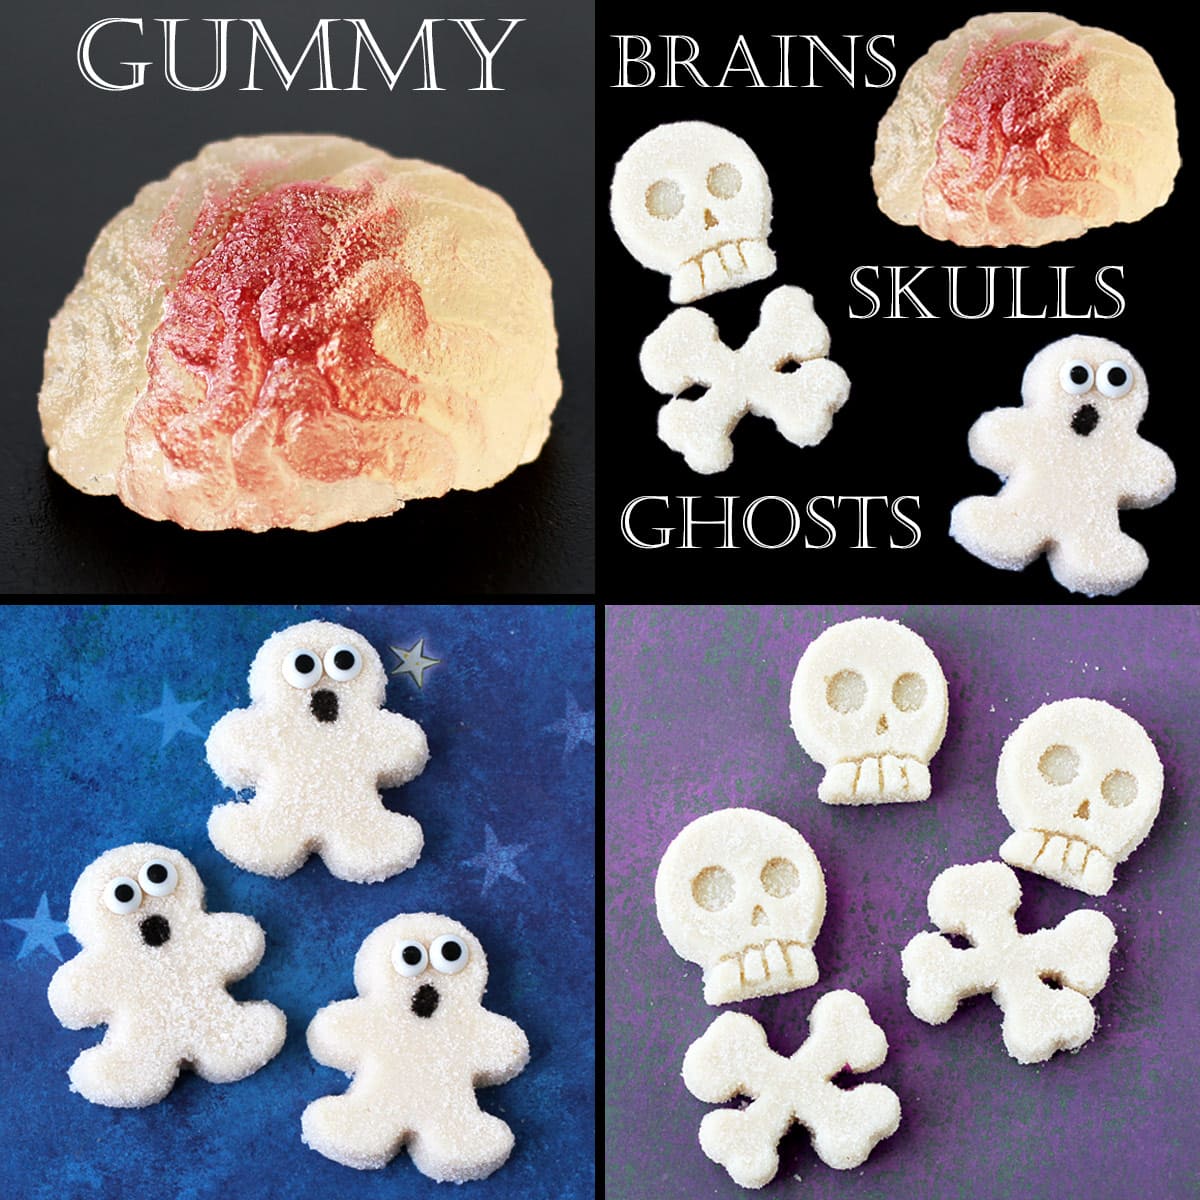 gummy brains, gummy skulls, and gummy ghosts.